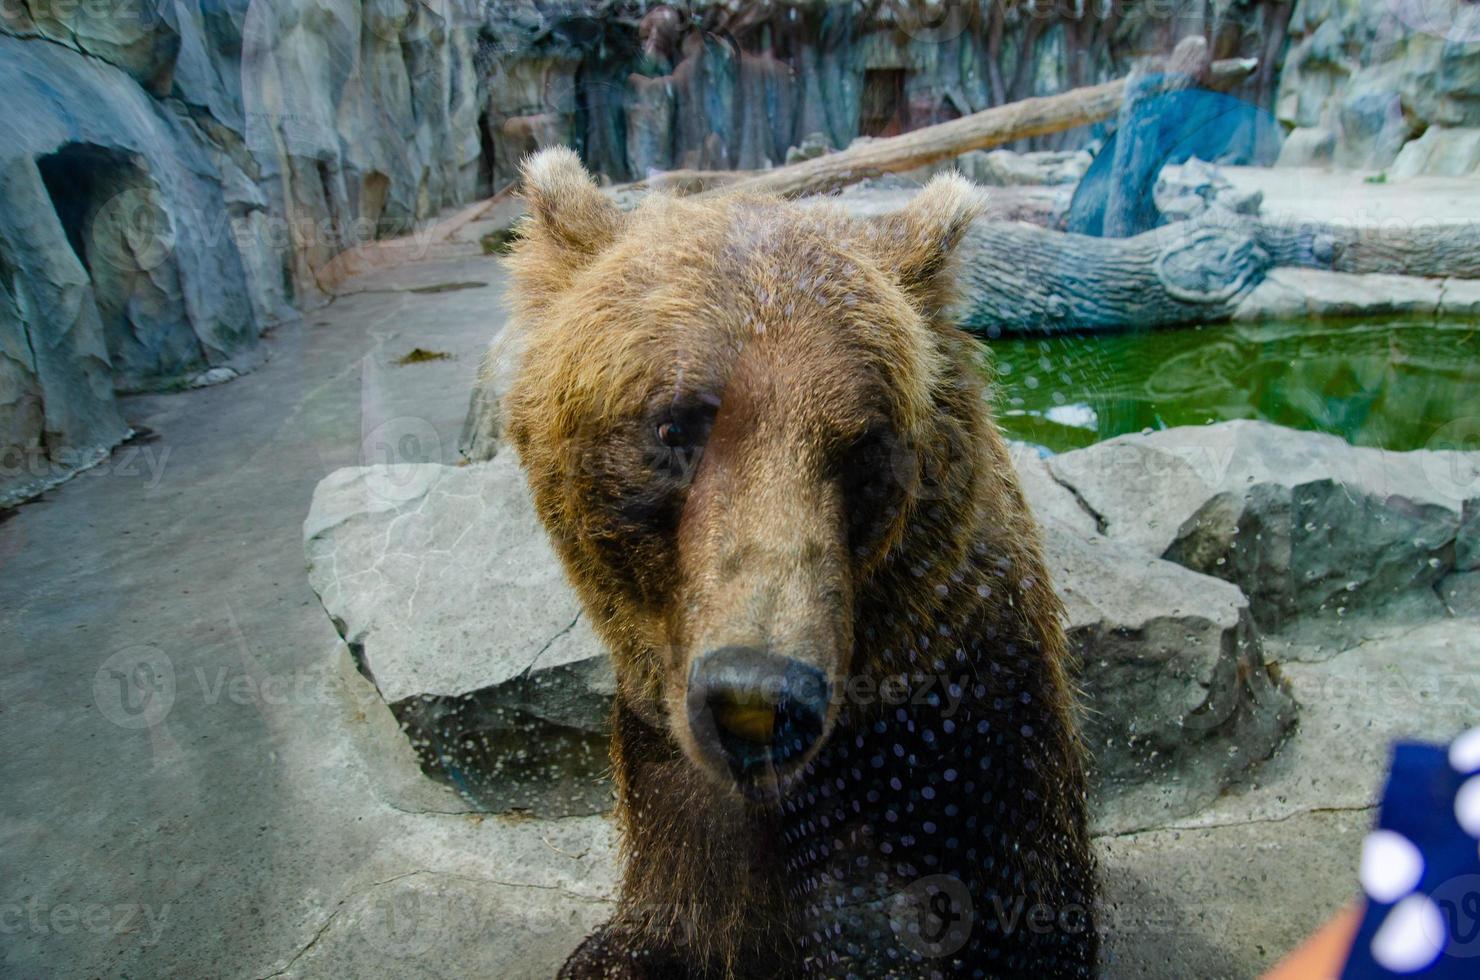 Tierrechte. freundlicher braunbär, der im zoo spaziert. niedlicher großer bär steiniger landschaftsnaturhintergrund. tierisches wildes leben. Erwachsener Braunbär in natürlicher Umgebung. foto